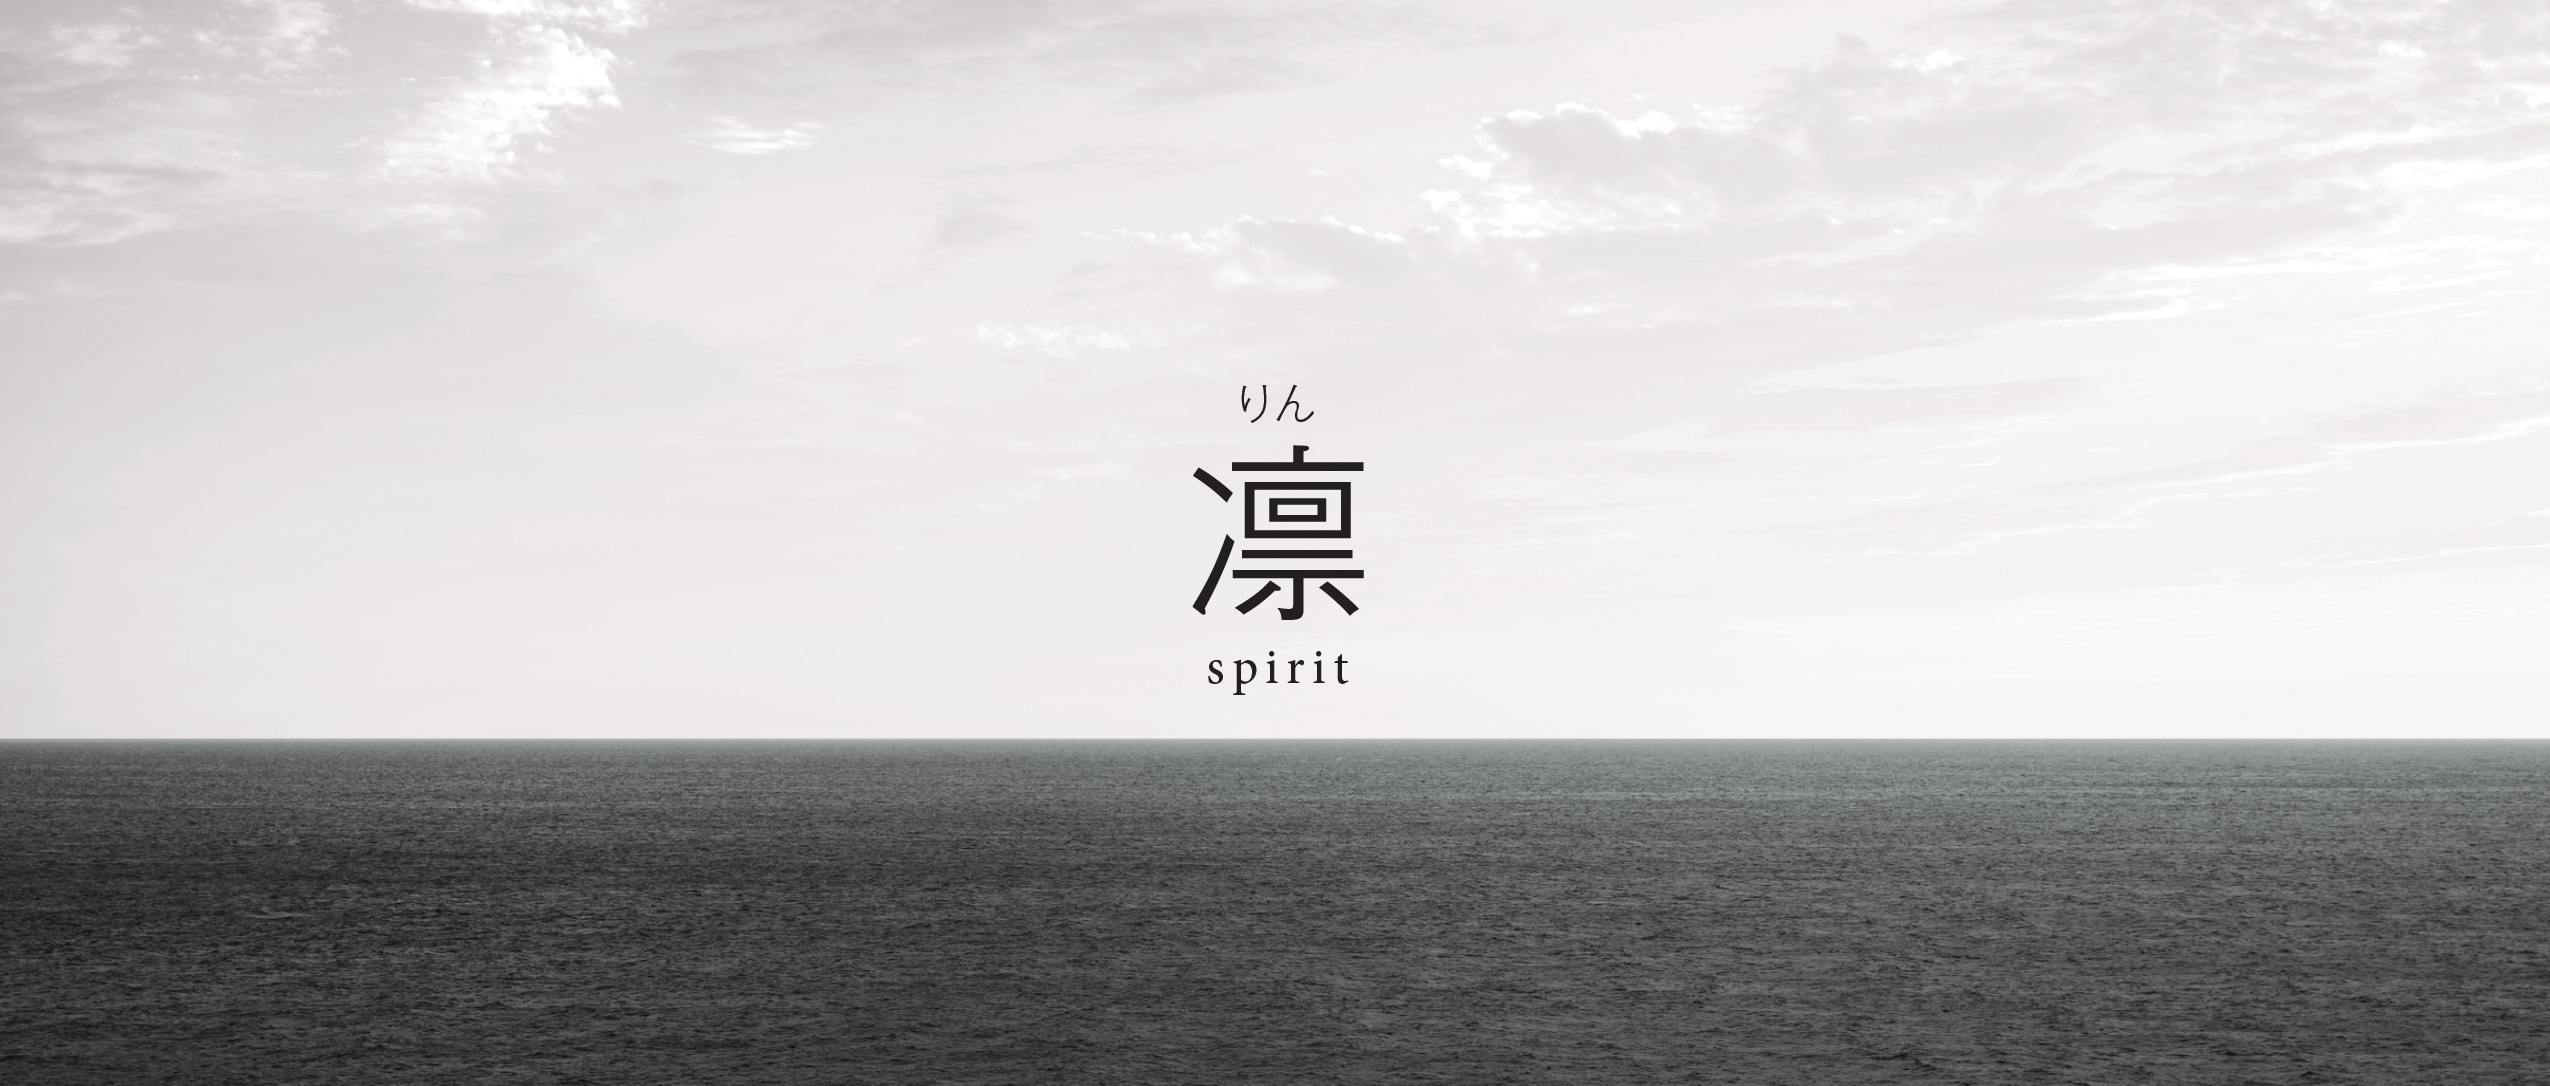 凛 spirit